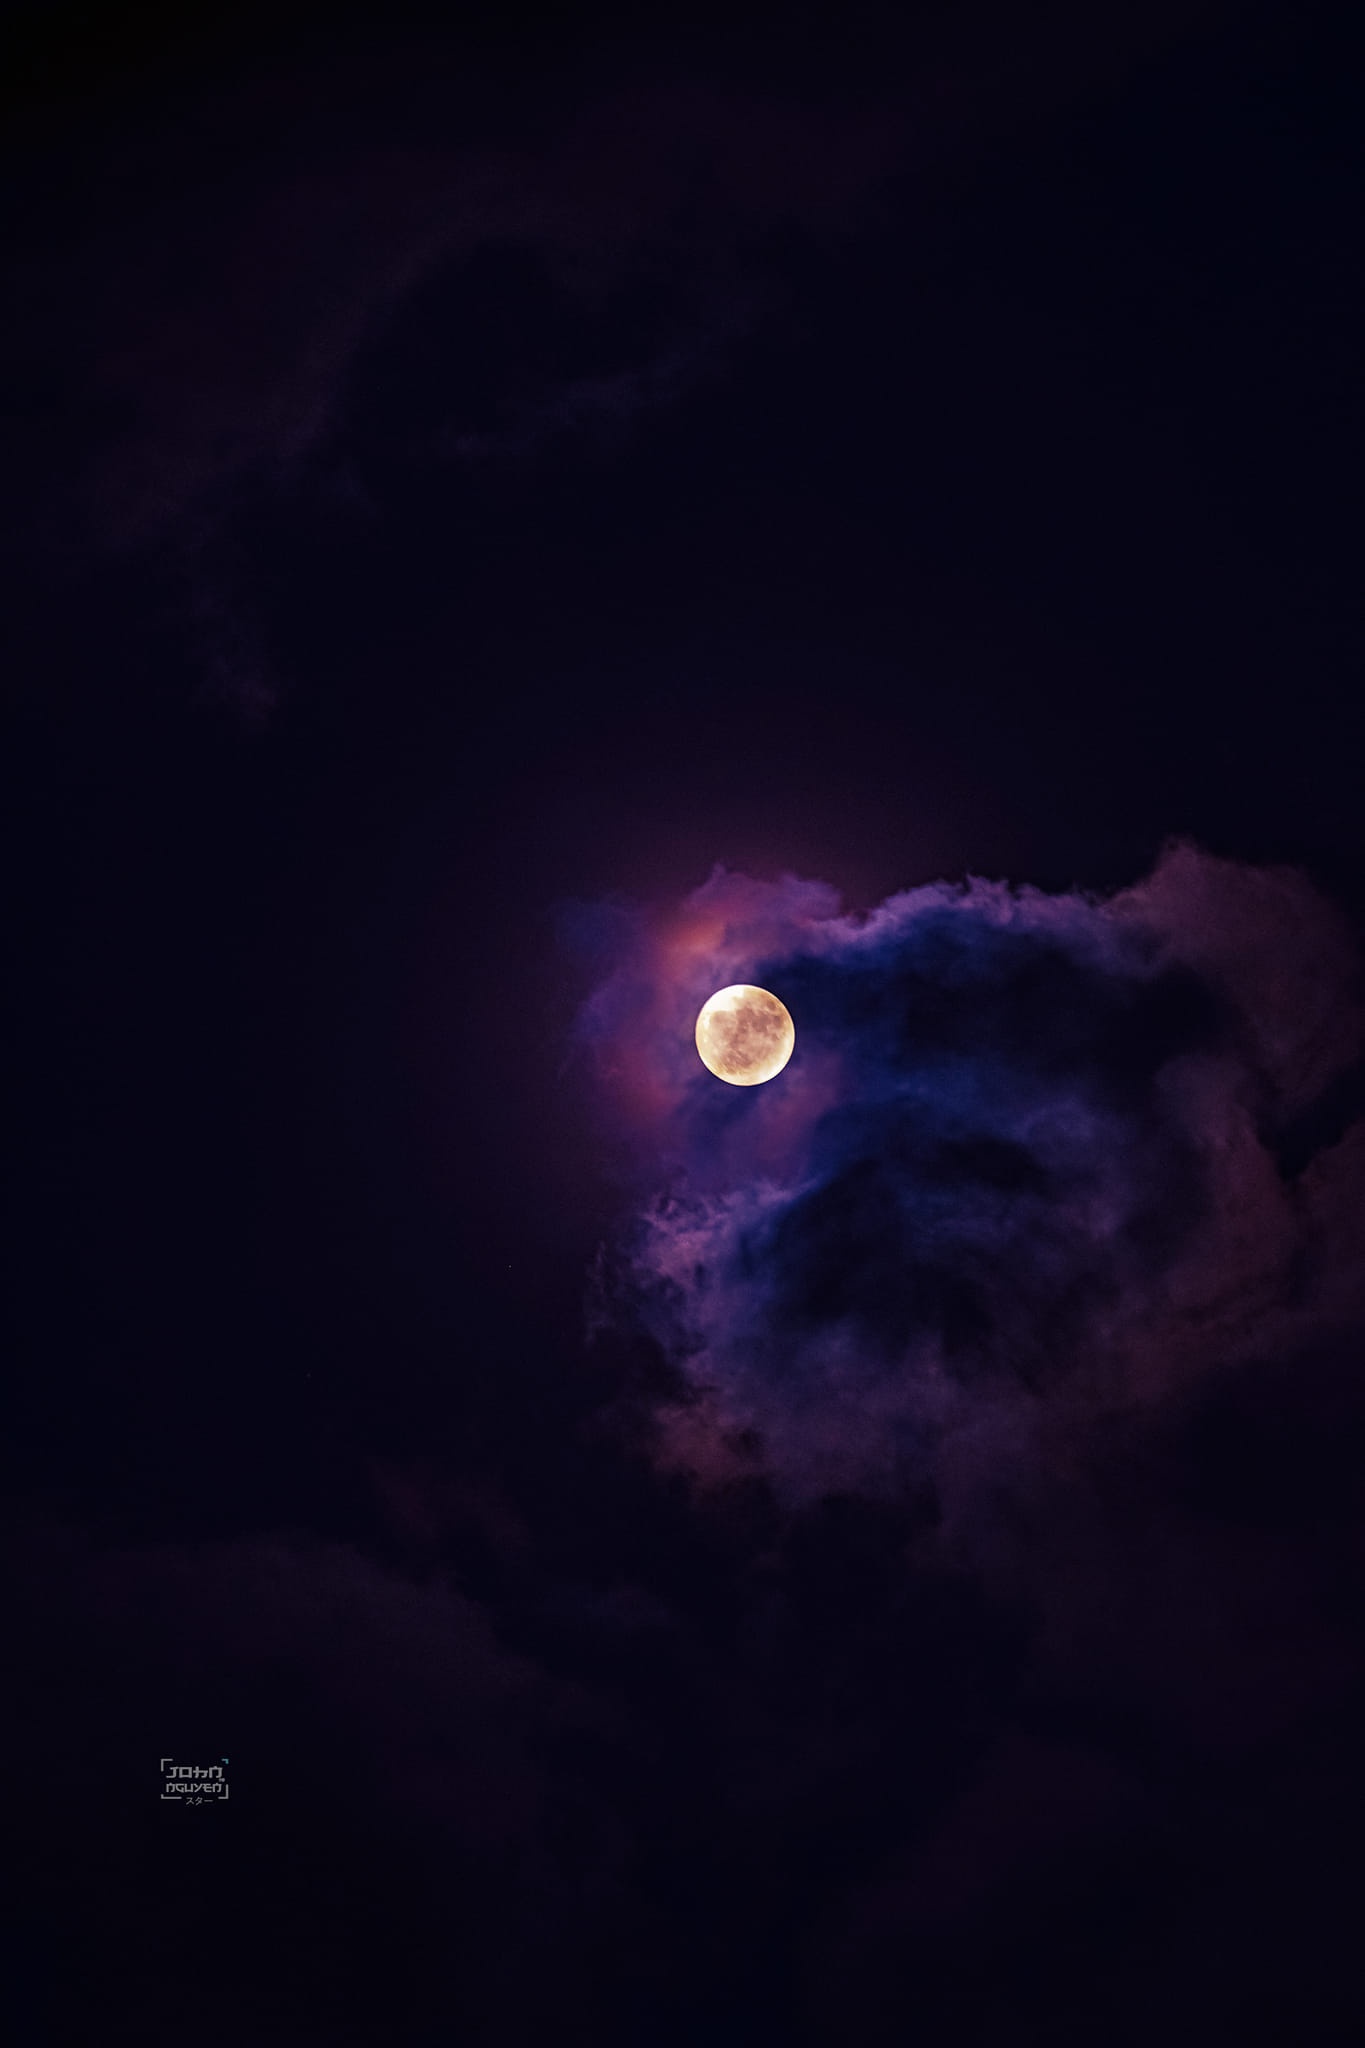  Nhiều khoảnh khắc đẹp của Mặt trăng ngày rằm tháng 8 được chia sẻ trên các hội nhóm yêu thiên văn. Ảnh: Quang Hữu Nguyễn